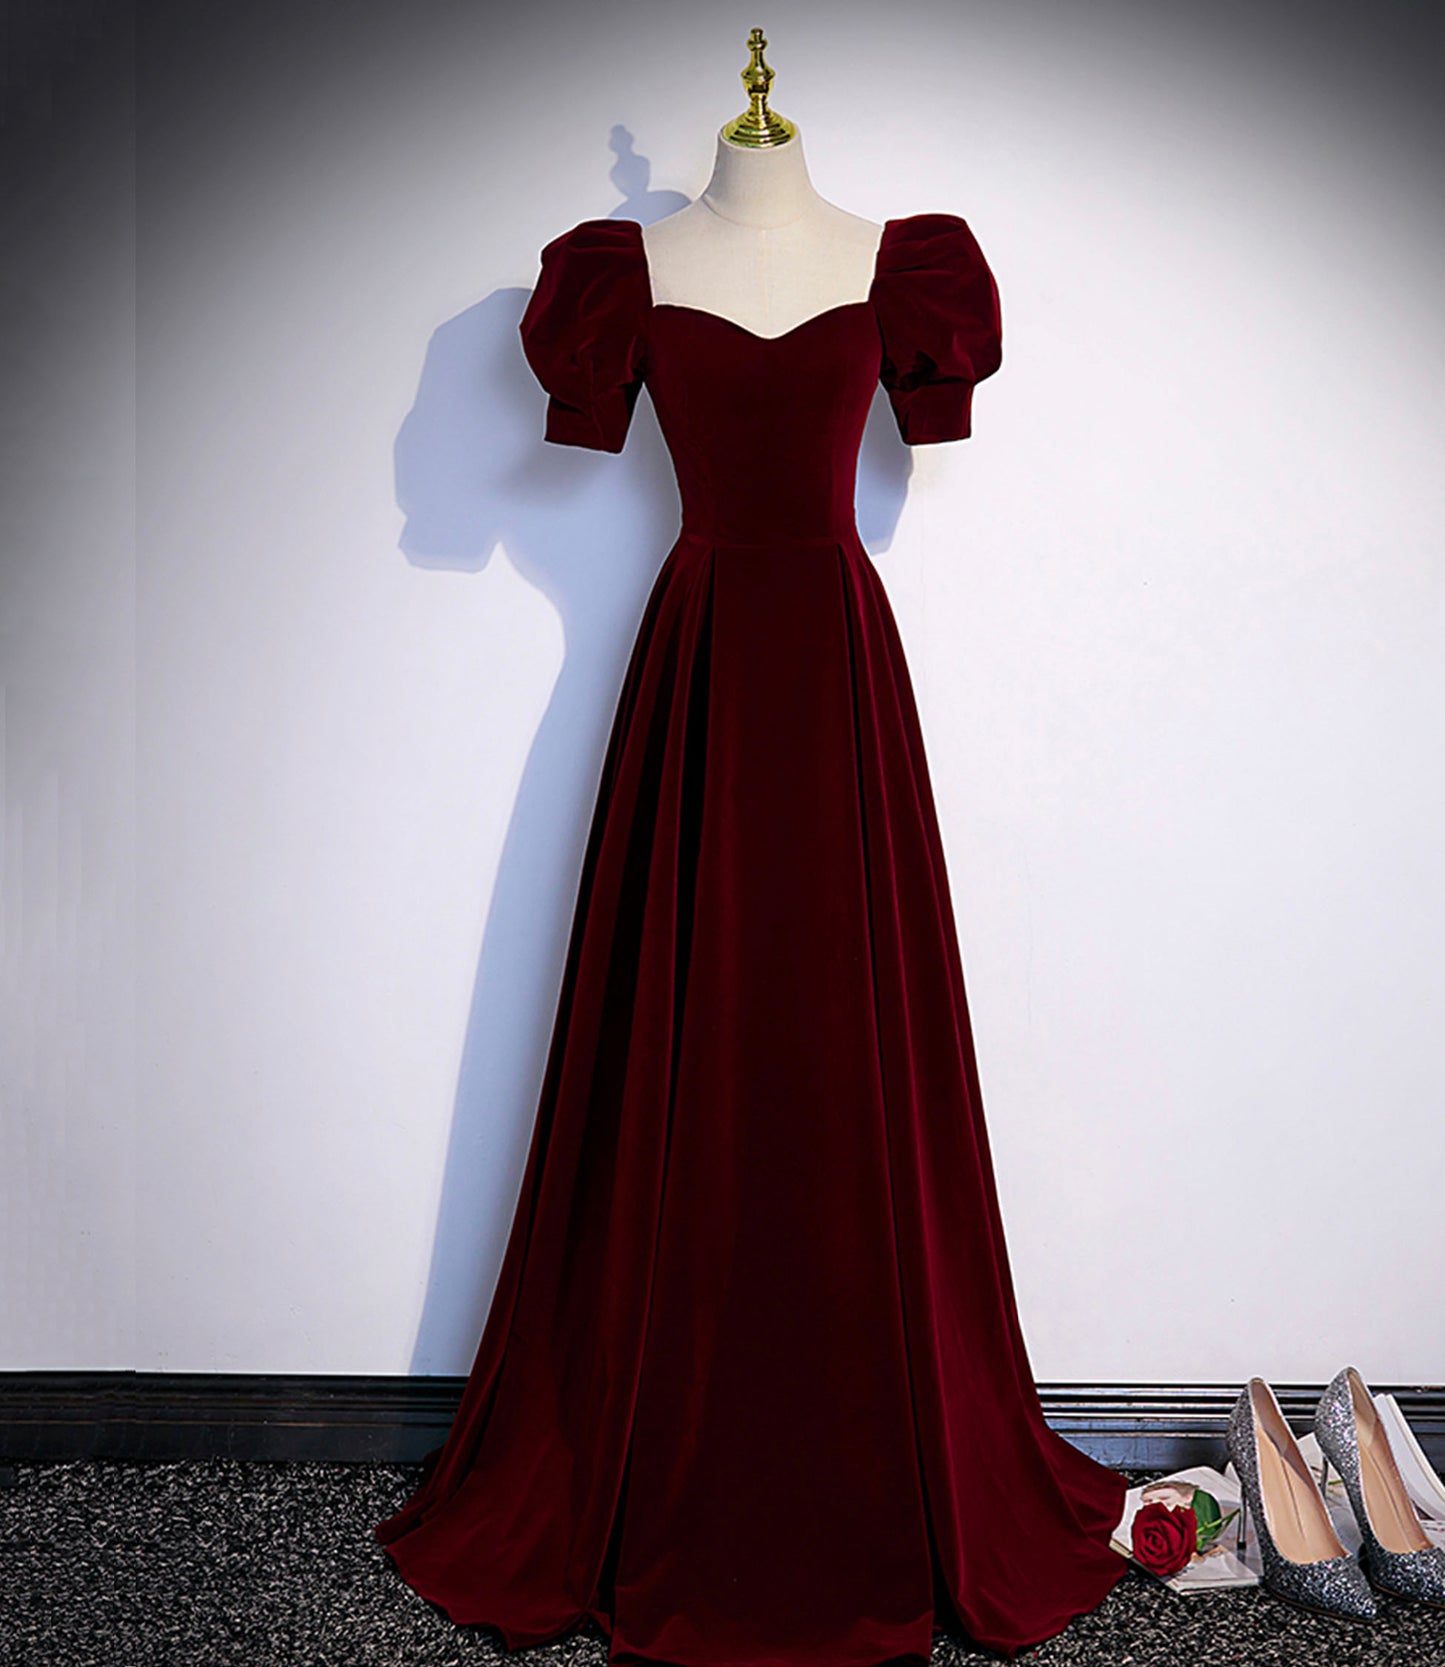 Burgundy velvet long prom dress evening dress  s88